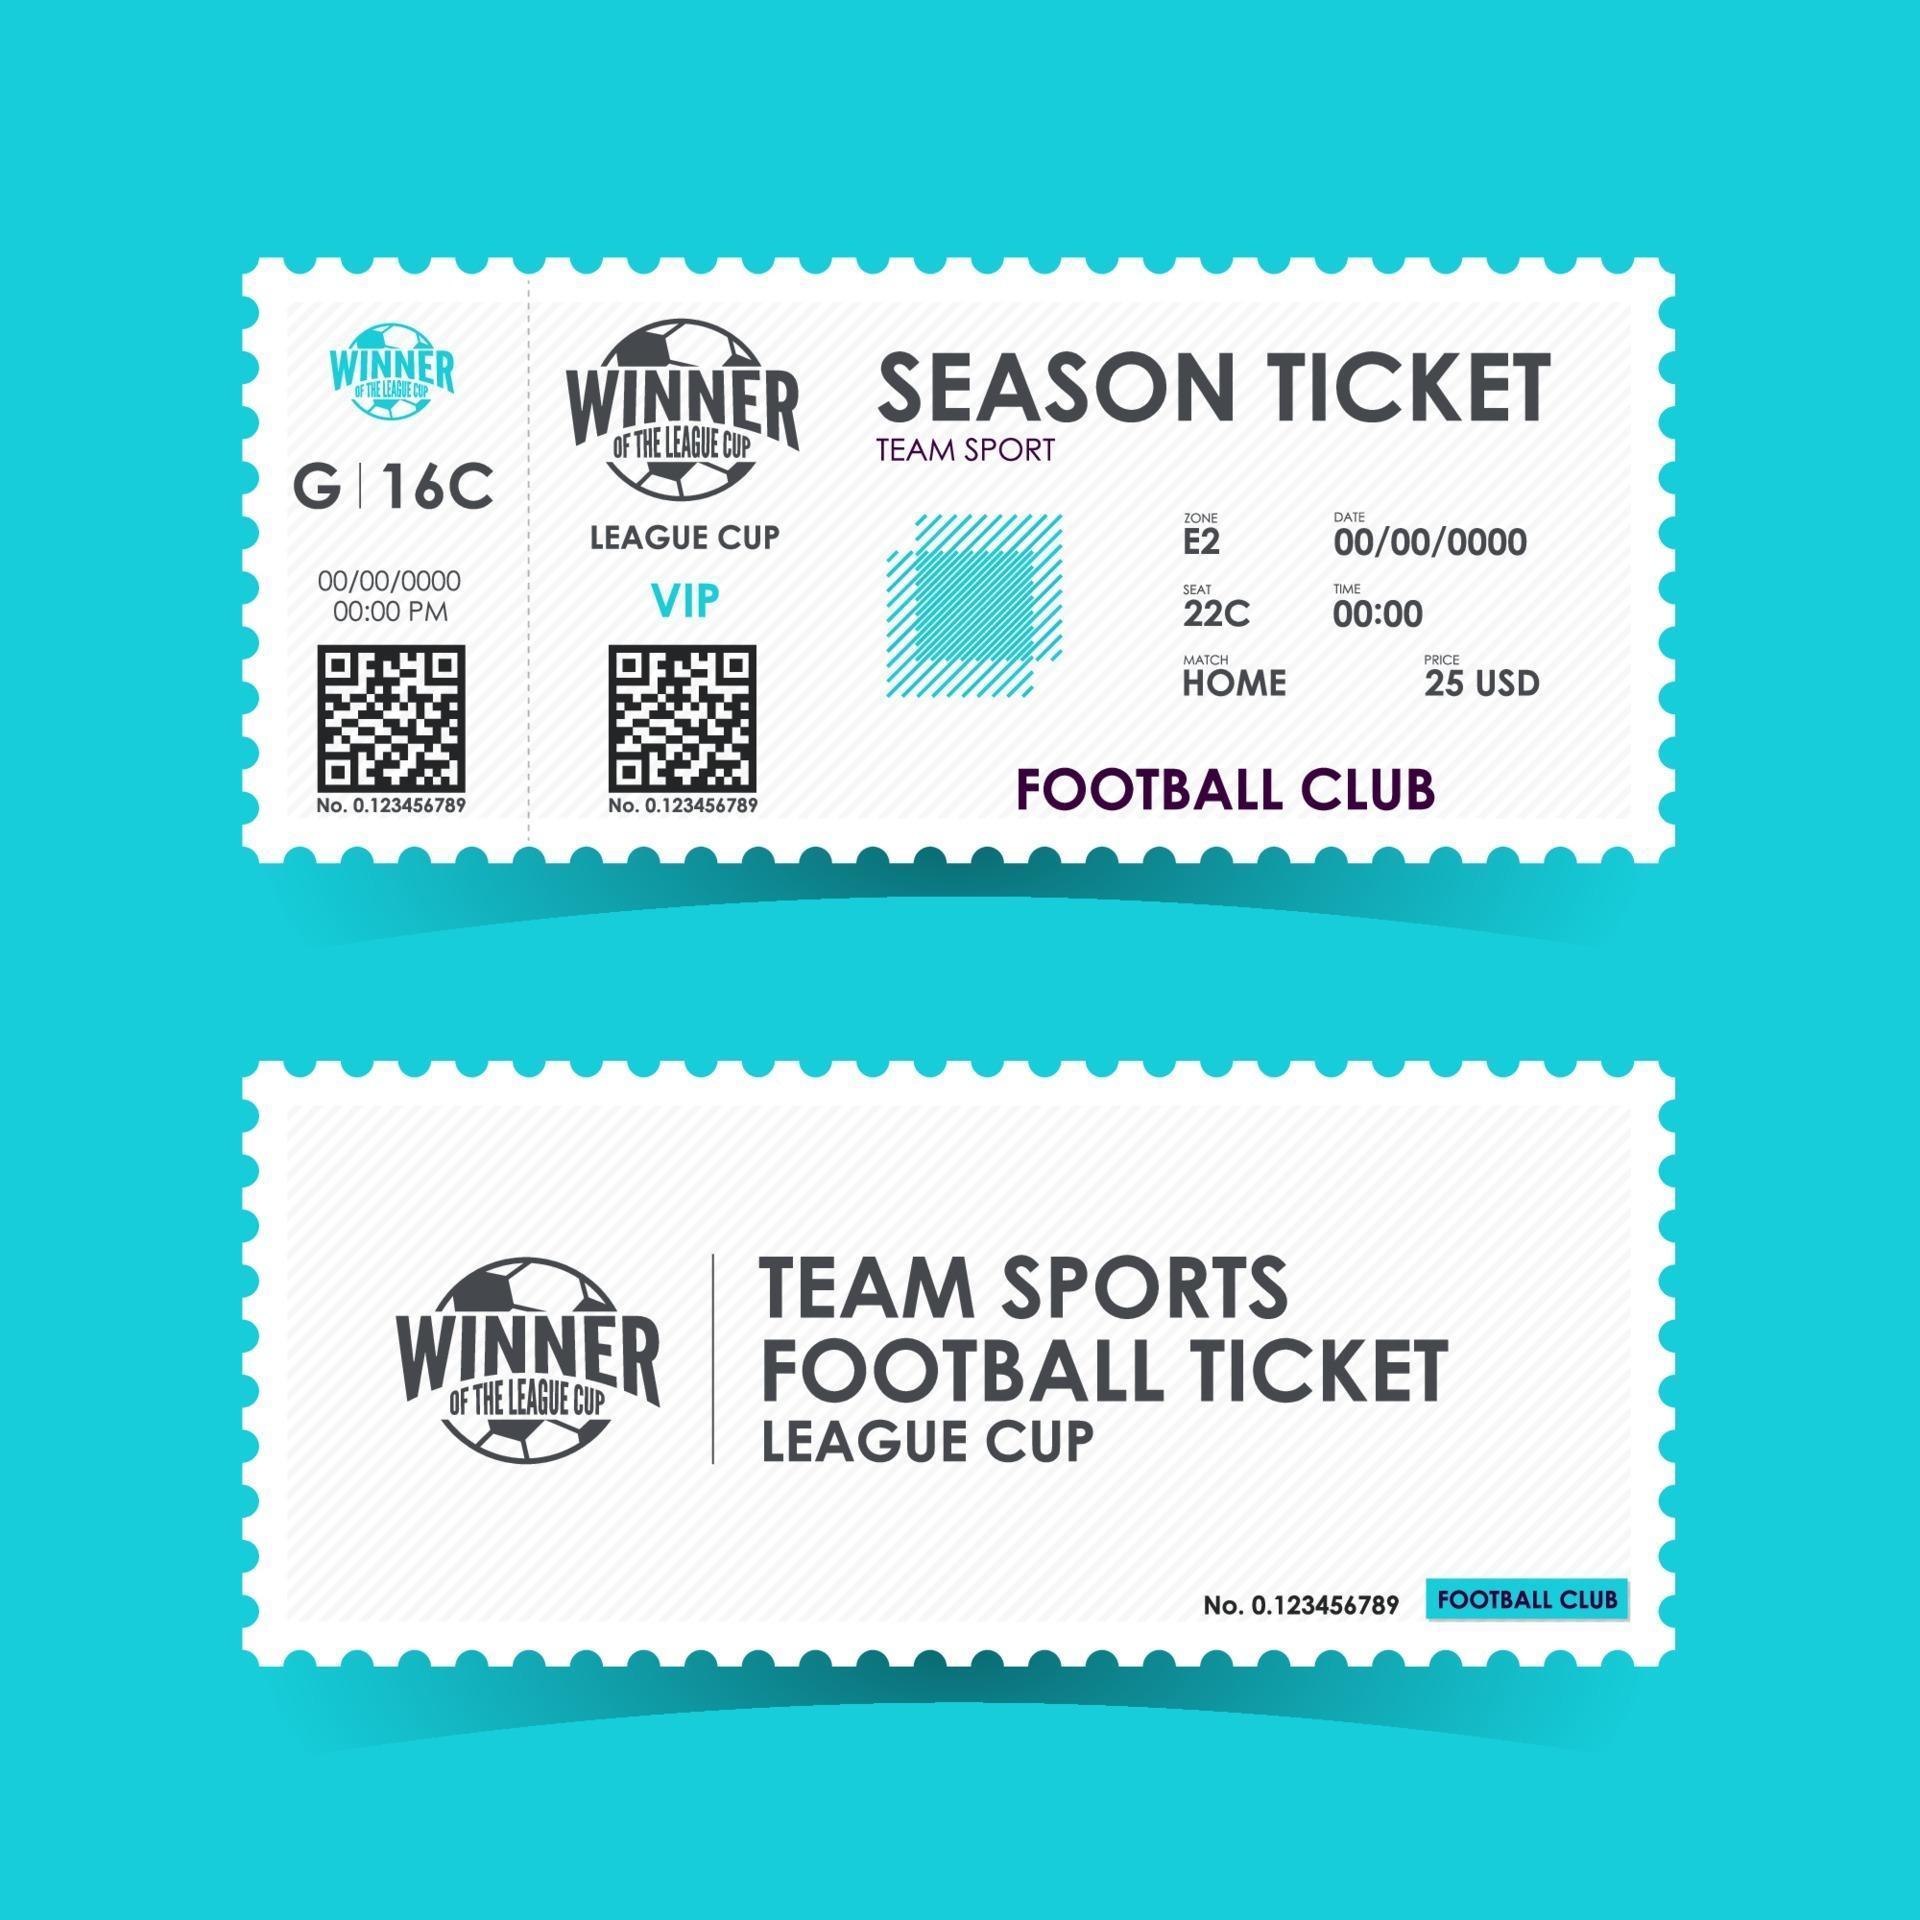 soccer-football-ticket-design-vector-illustration-3089987-vector-art-at-vecteezy